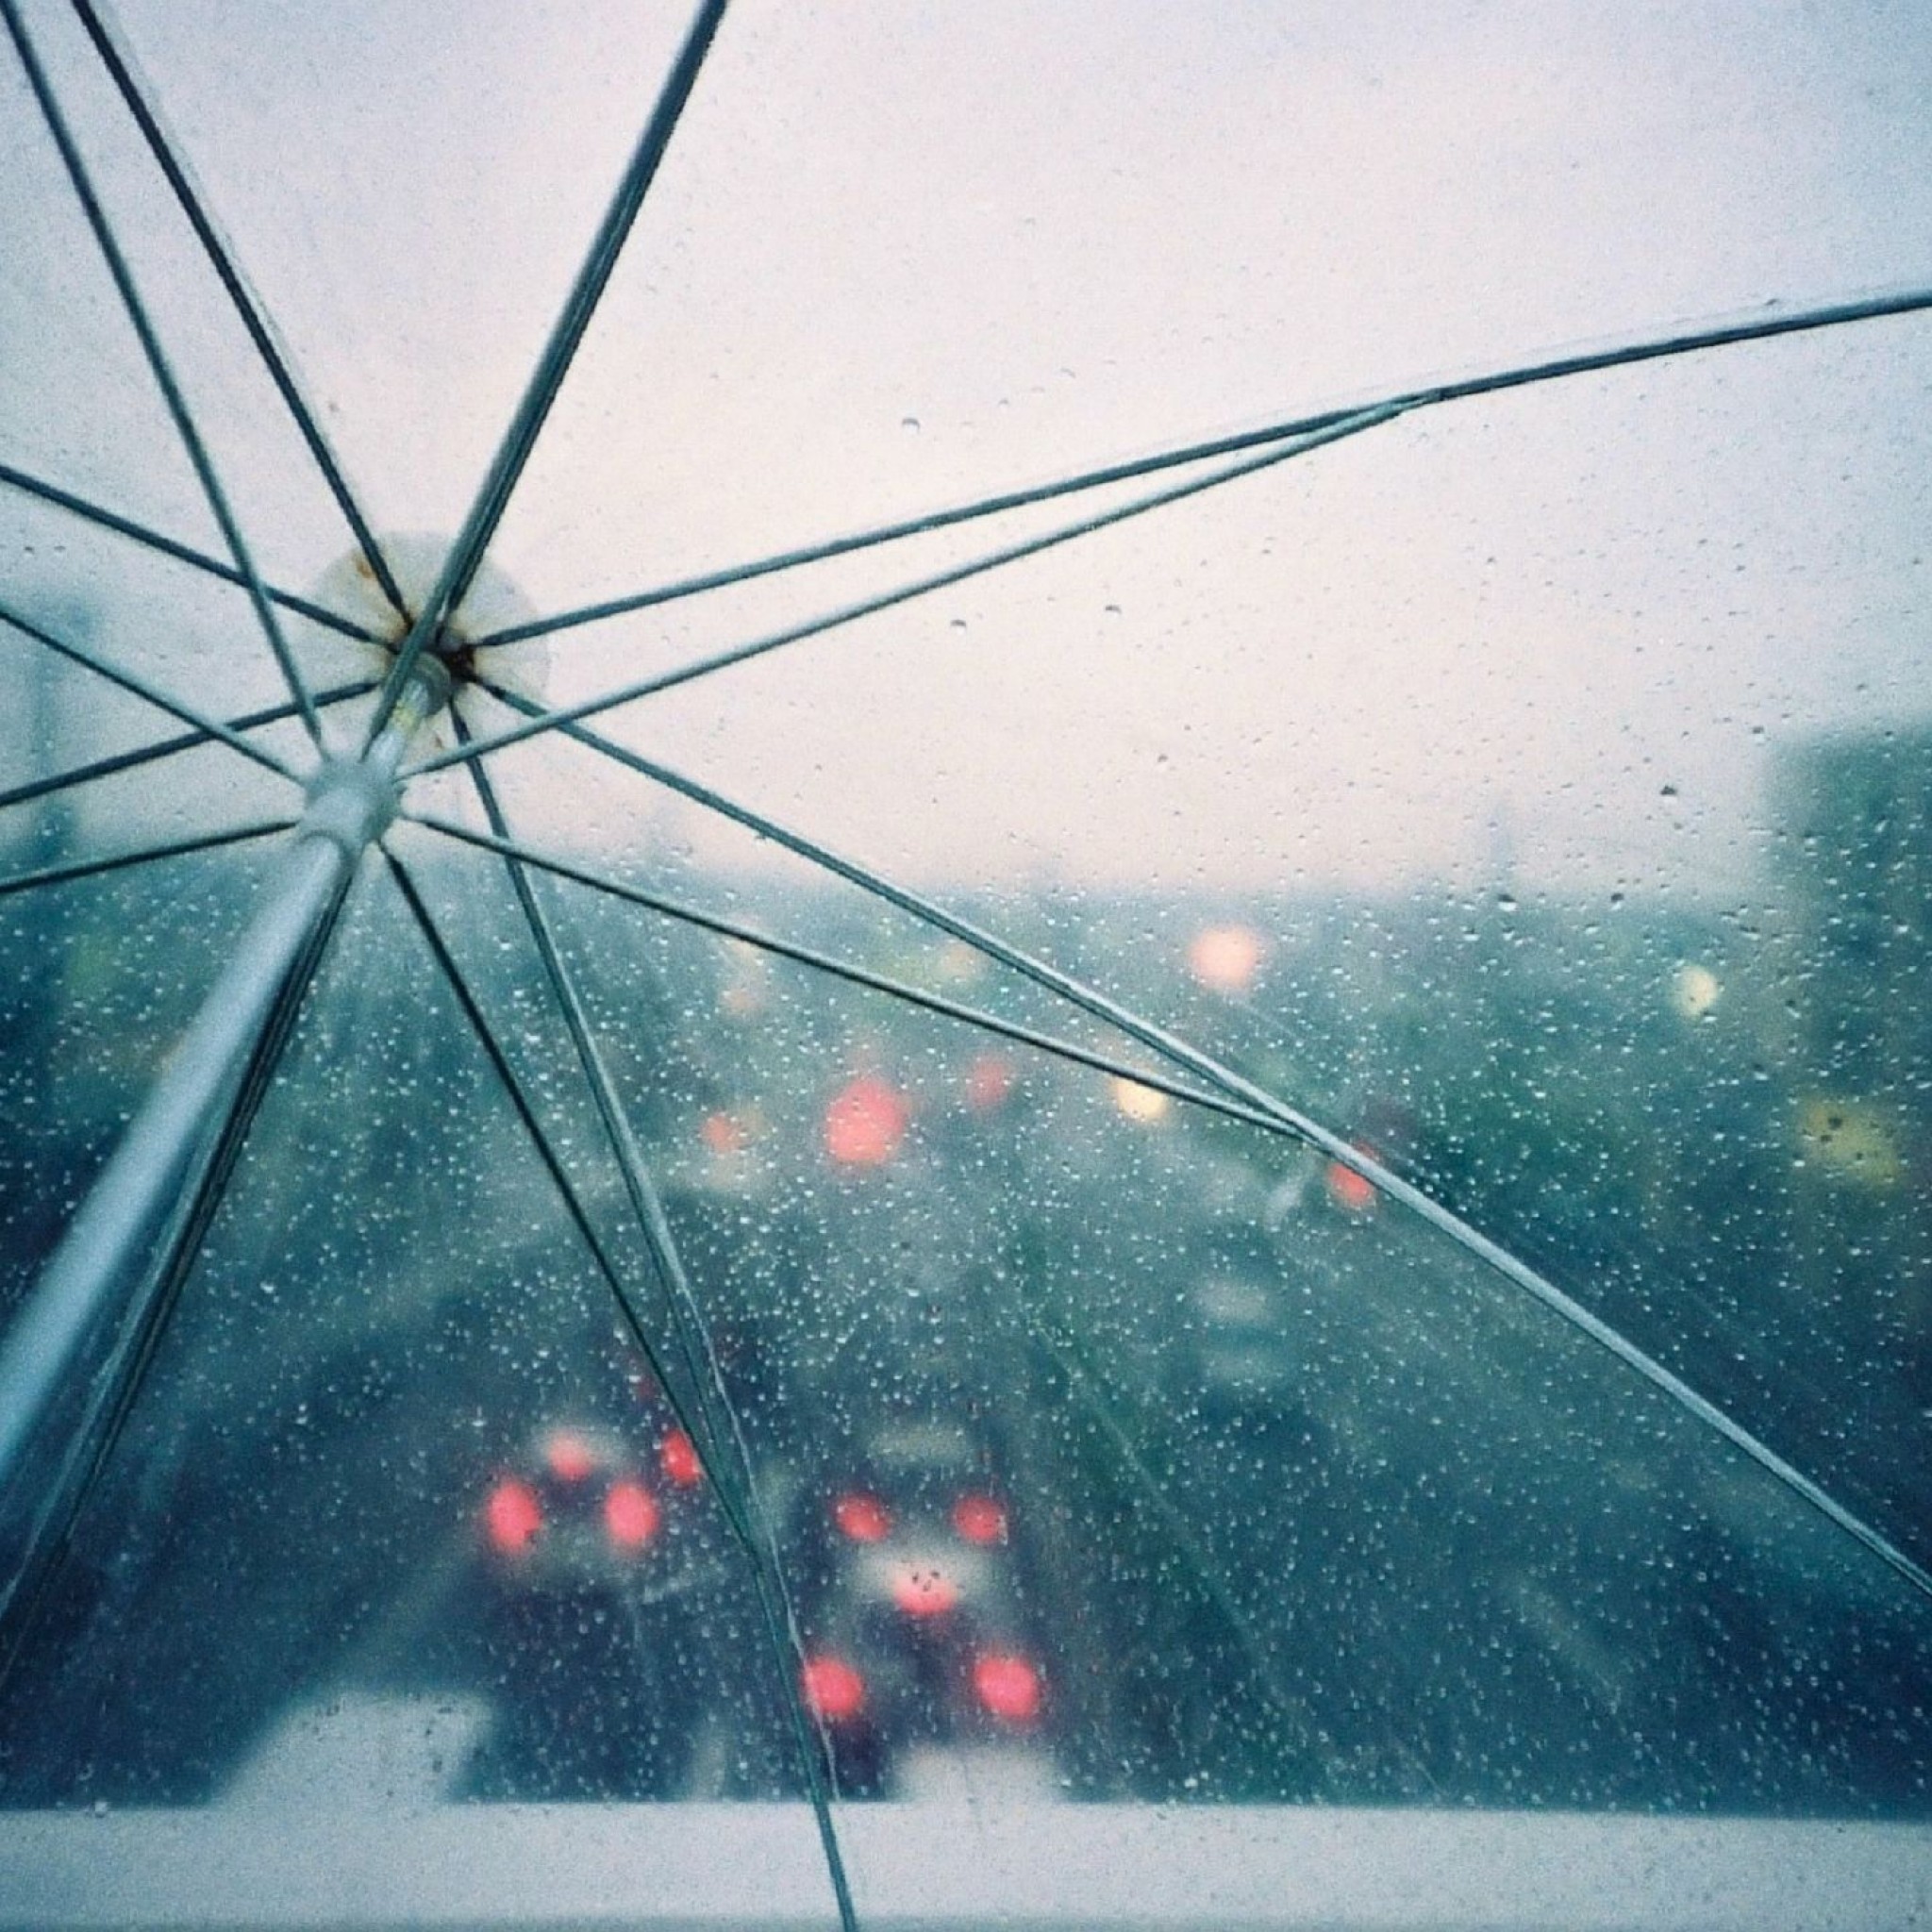 Drops Of Rain Umbrella - HD Wallpaper 